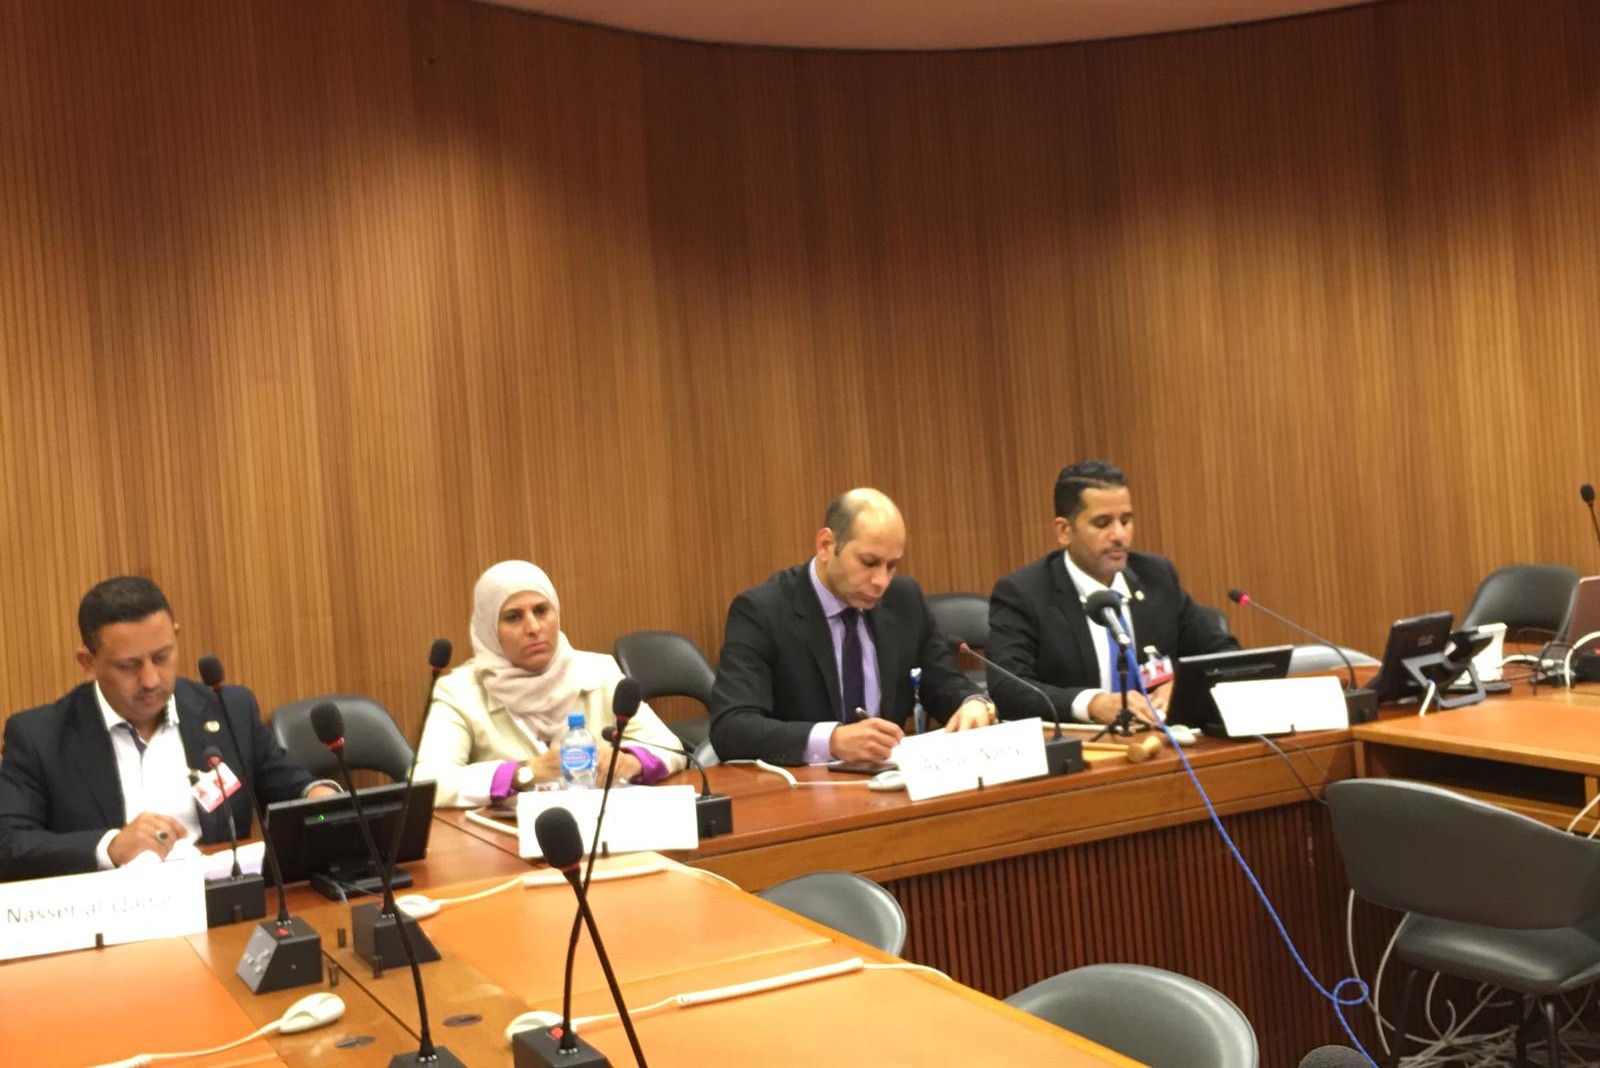 أيمن نصري - رئيس المنتدى العربي الأوروبي للحوار وحقوق الإنسان